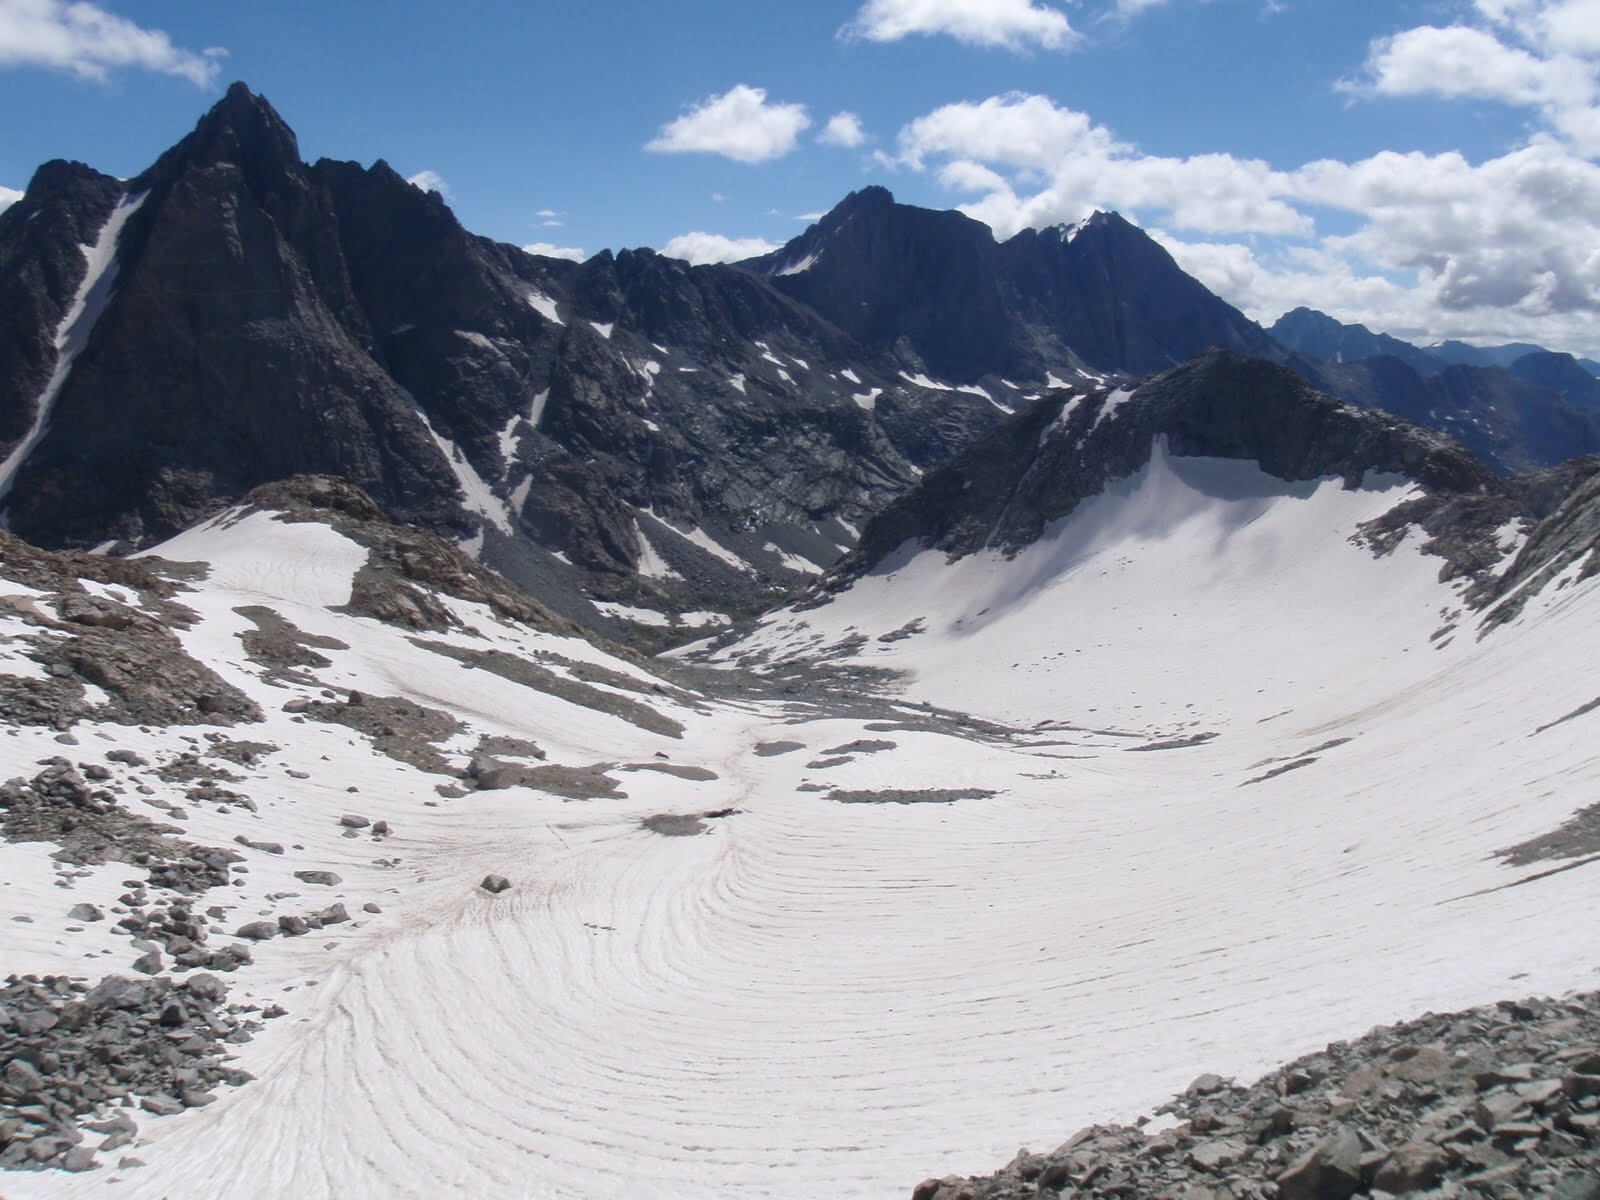 Twins Glacier, our descent into Titcomb Basin